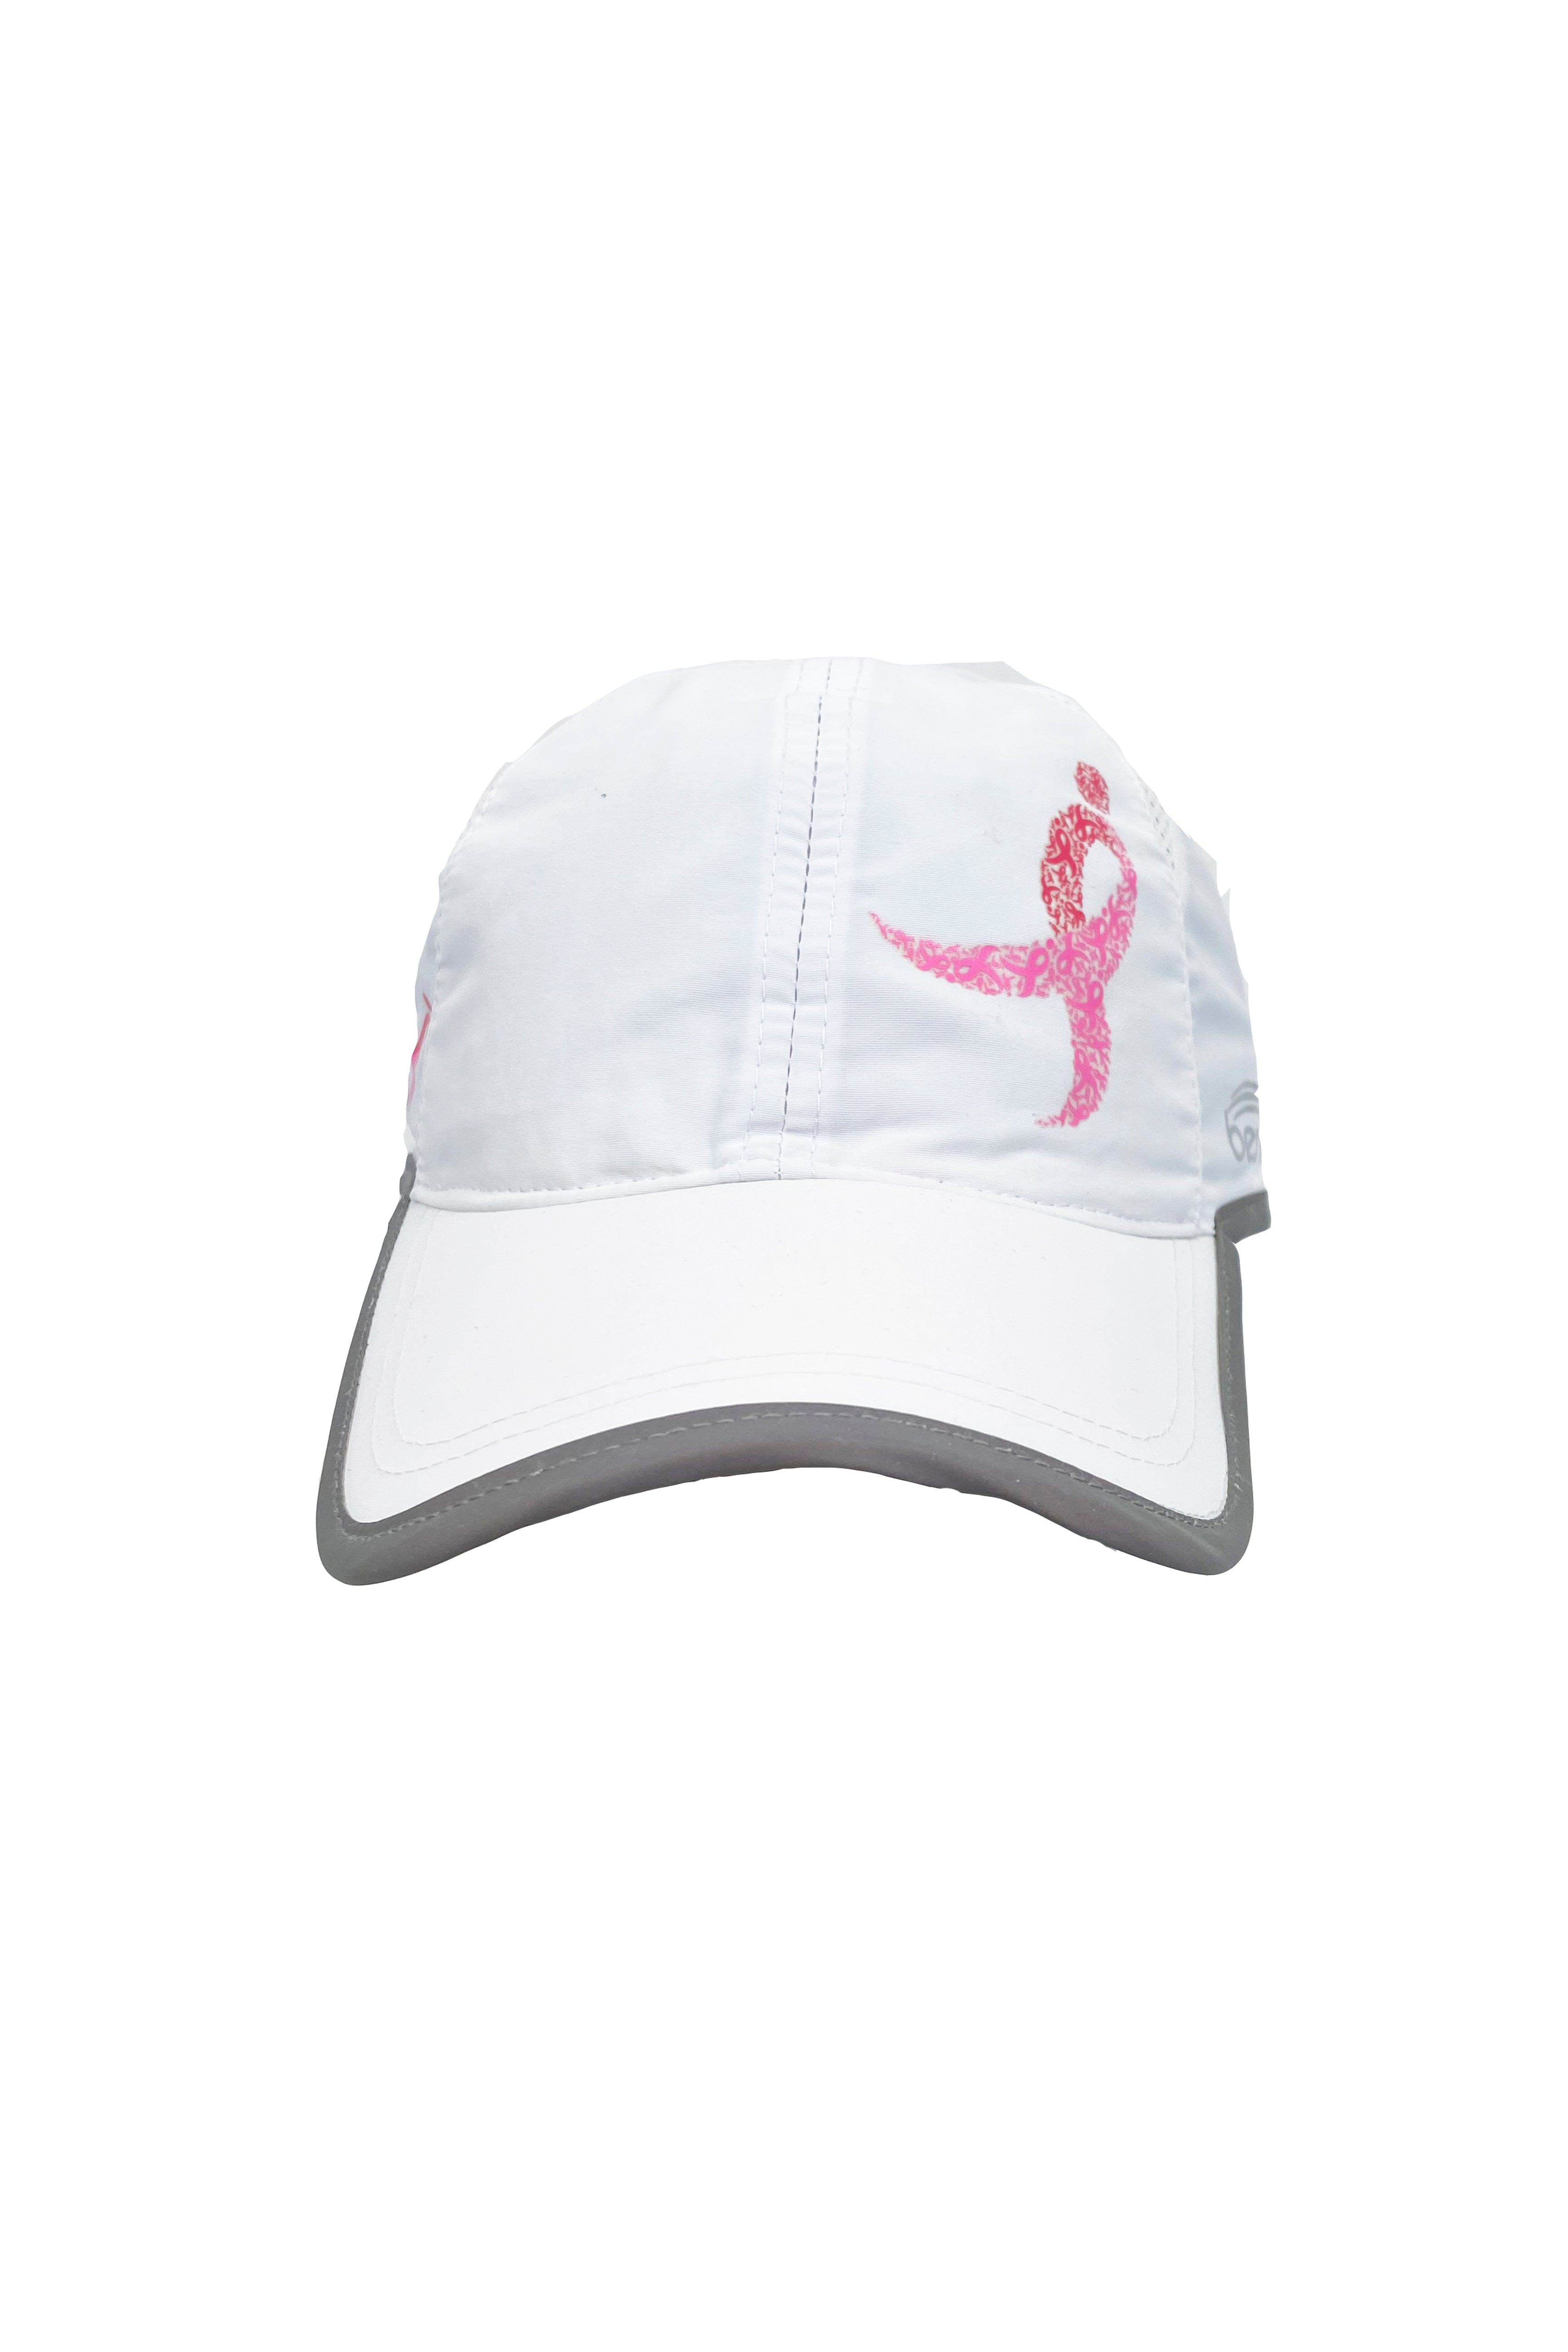 Komen Columbus Pink Ribbon Running Hat/White